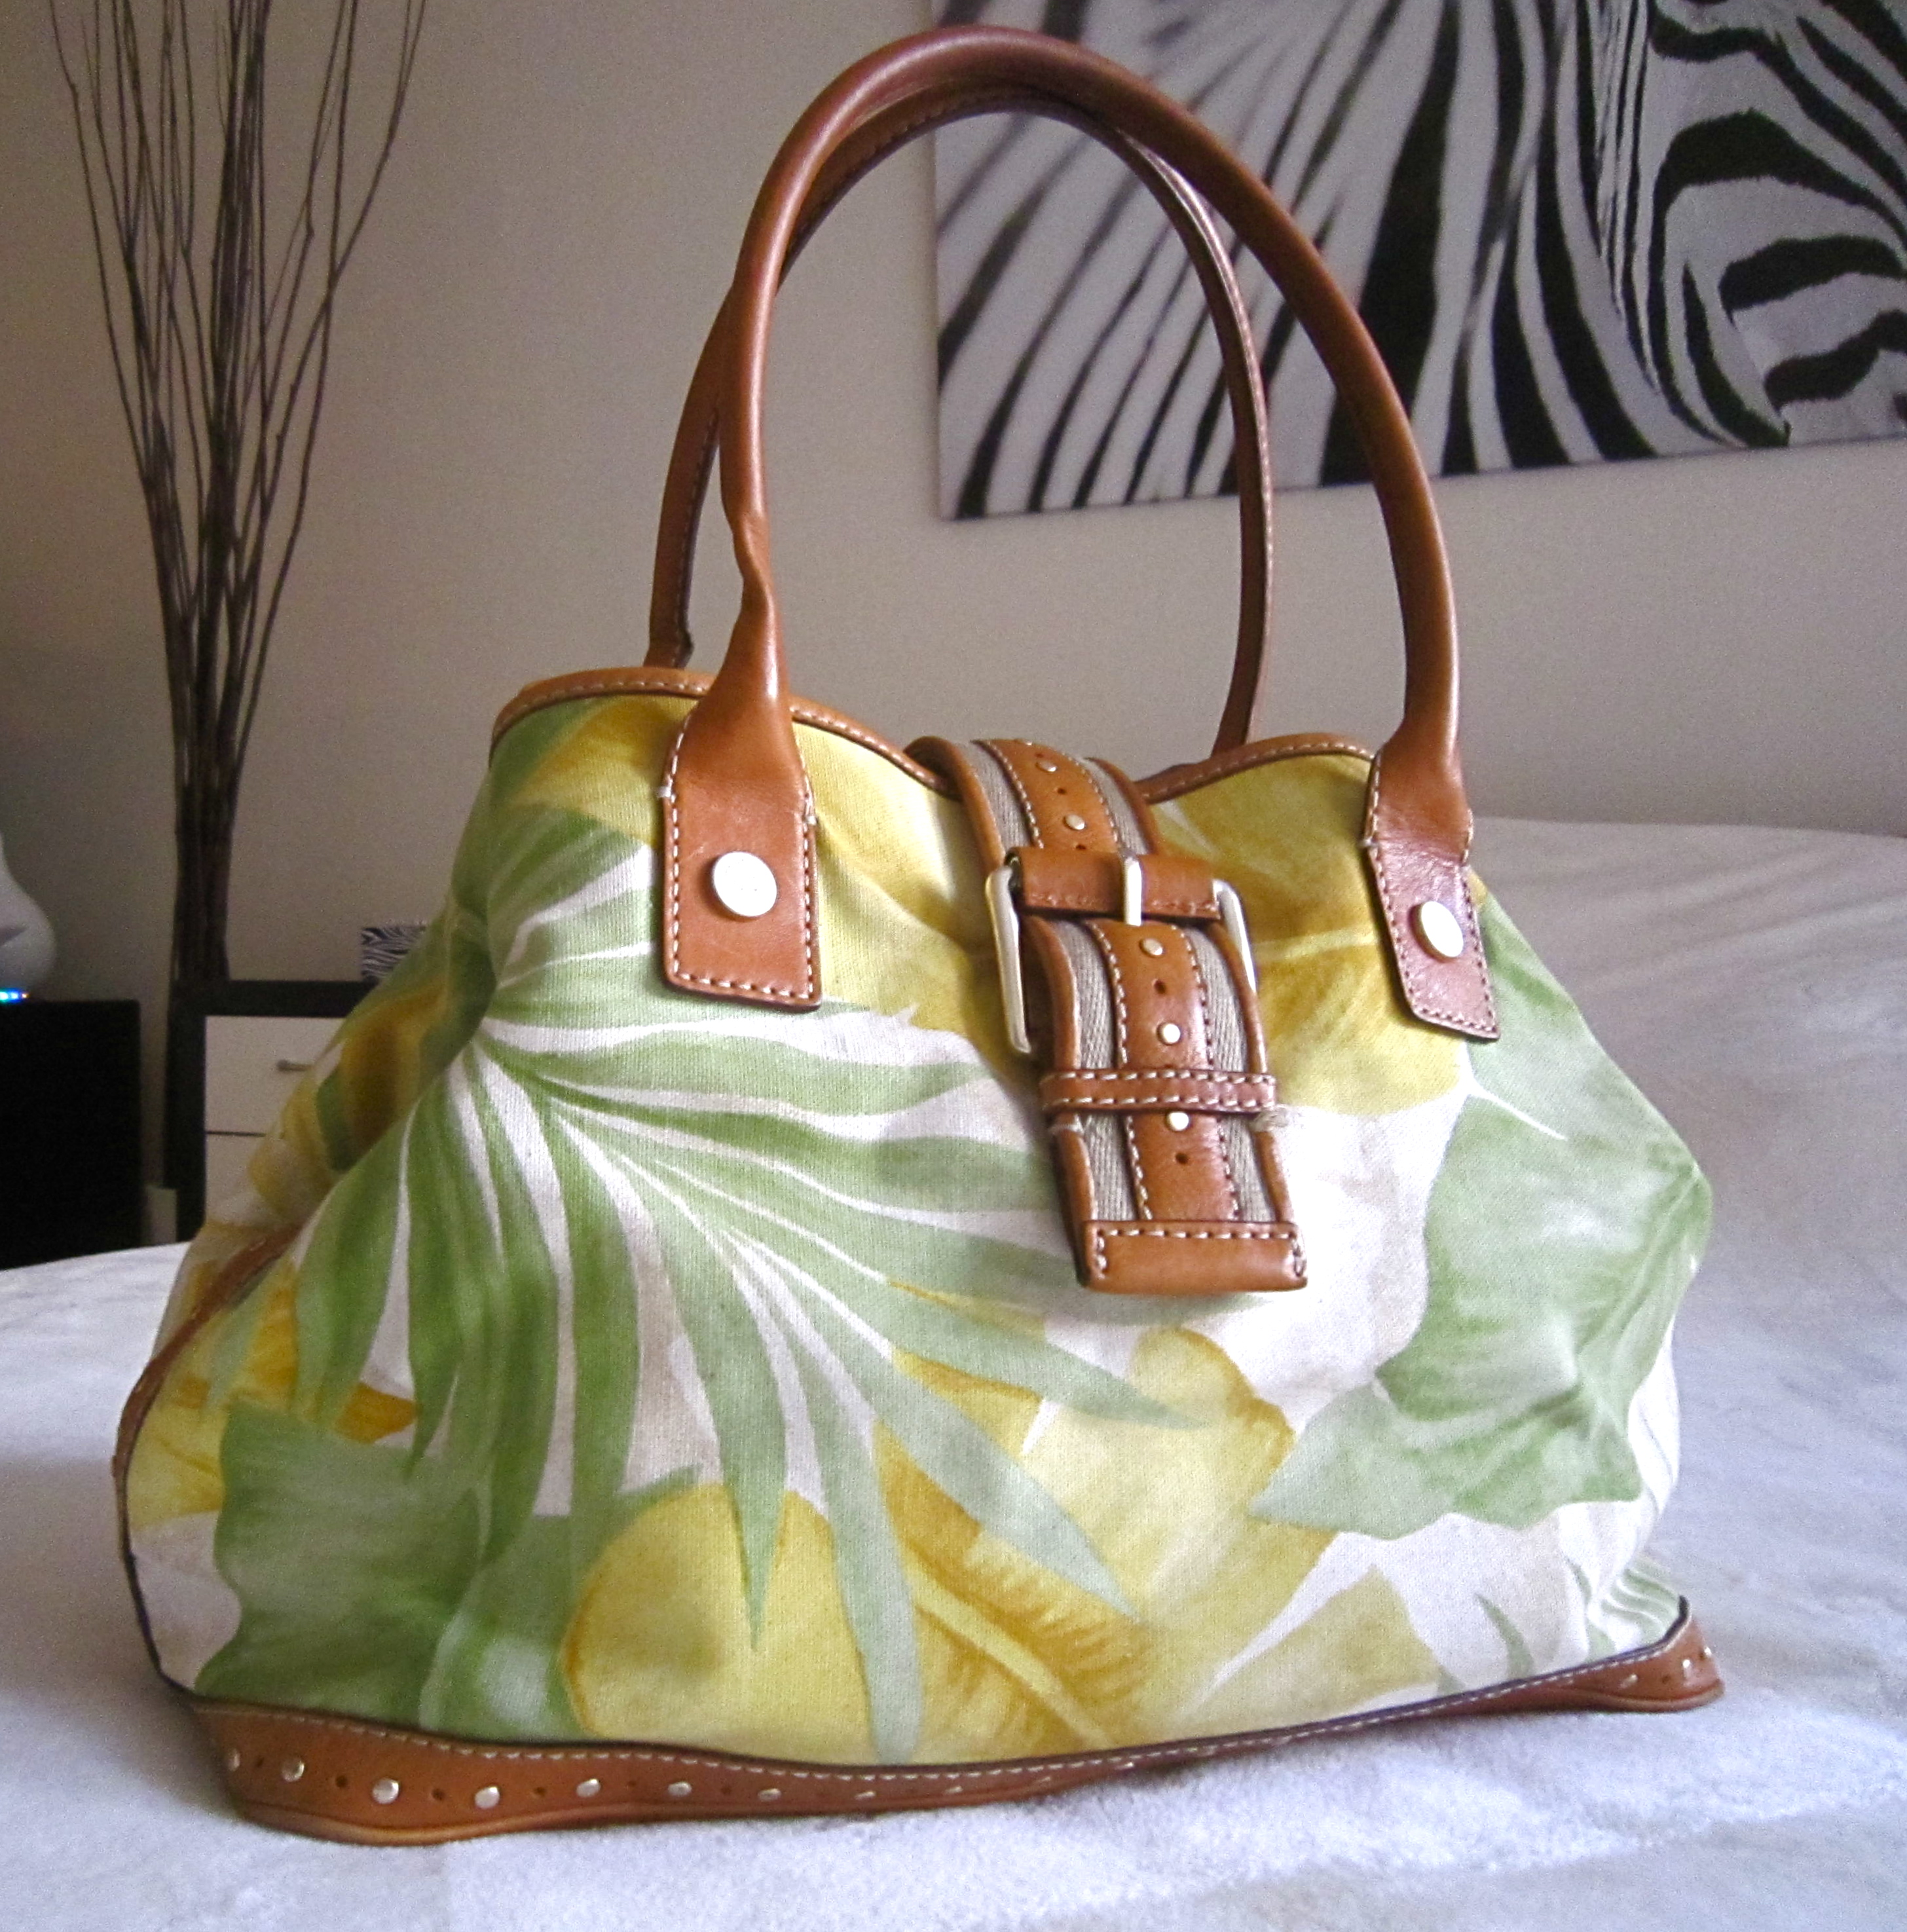 Michael Kors Women's Yellow Tote Bags